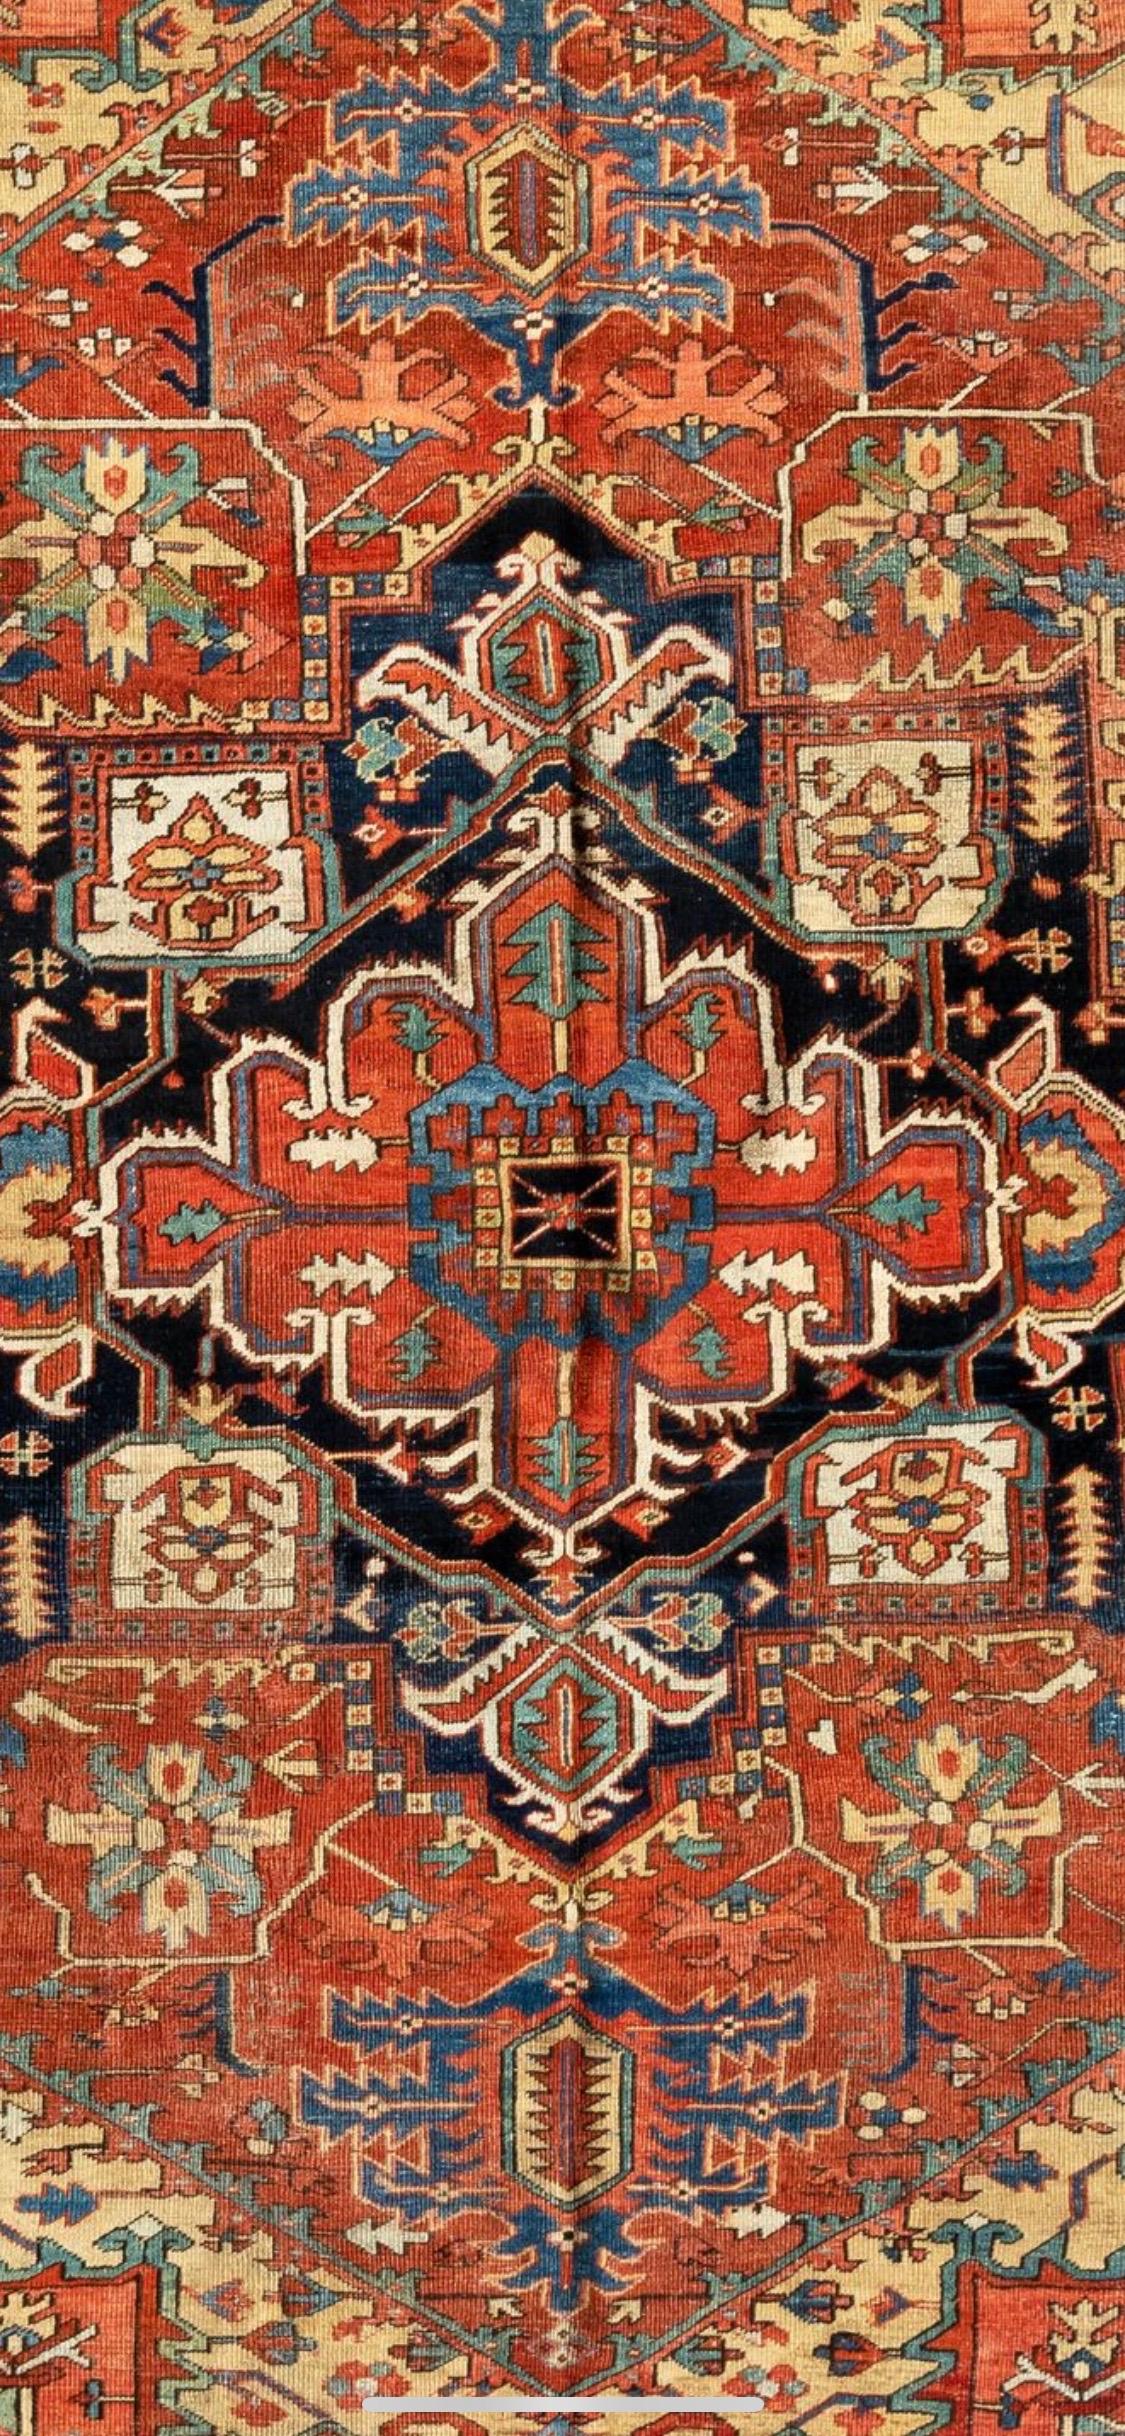 Les tapis Heriz sont l'un des tapis les plus célèbres d'Iran, en raison de leur style unique et distinctif. Heriz est une ville située dans le nord-ouest de l'Iran, près de la ville de Tabriz, qui est un important centre de tissage de tapis en Iran.